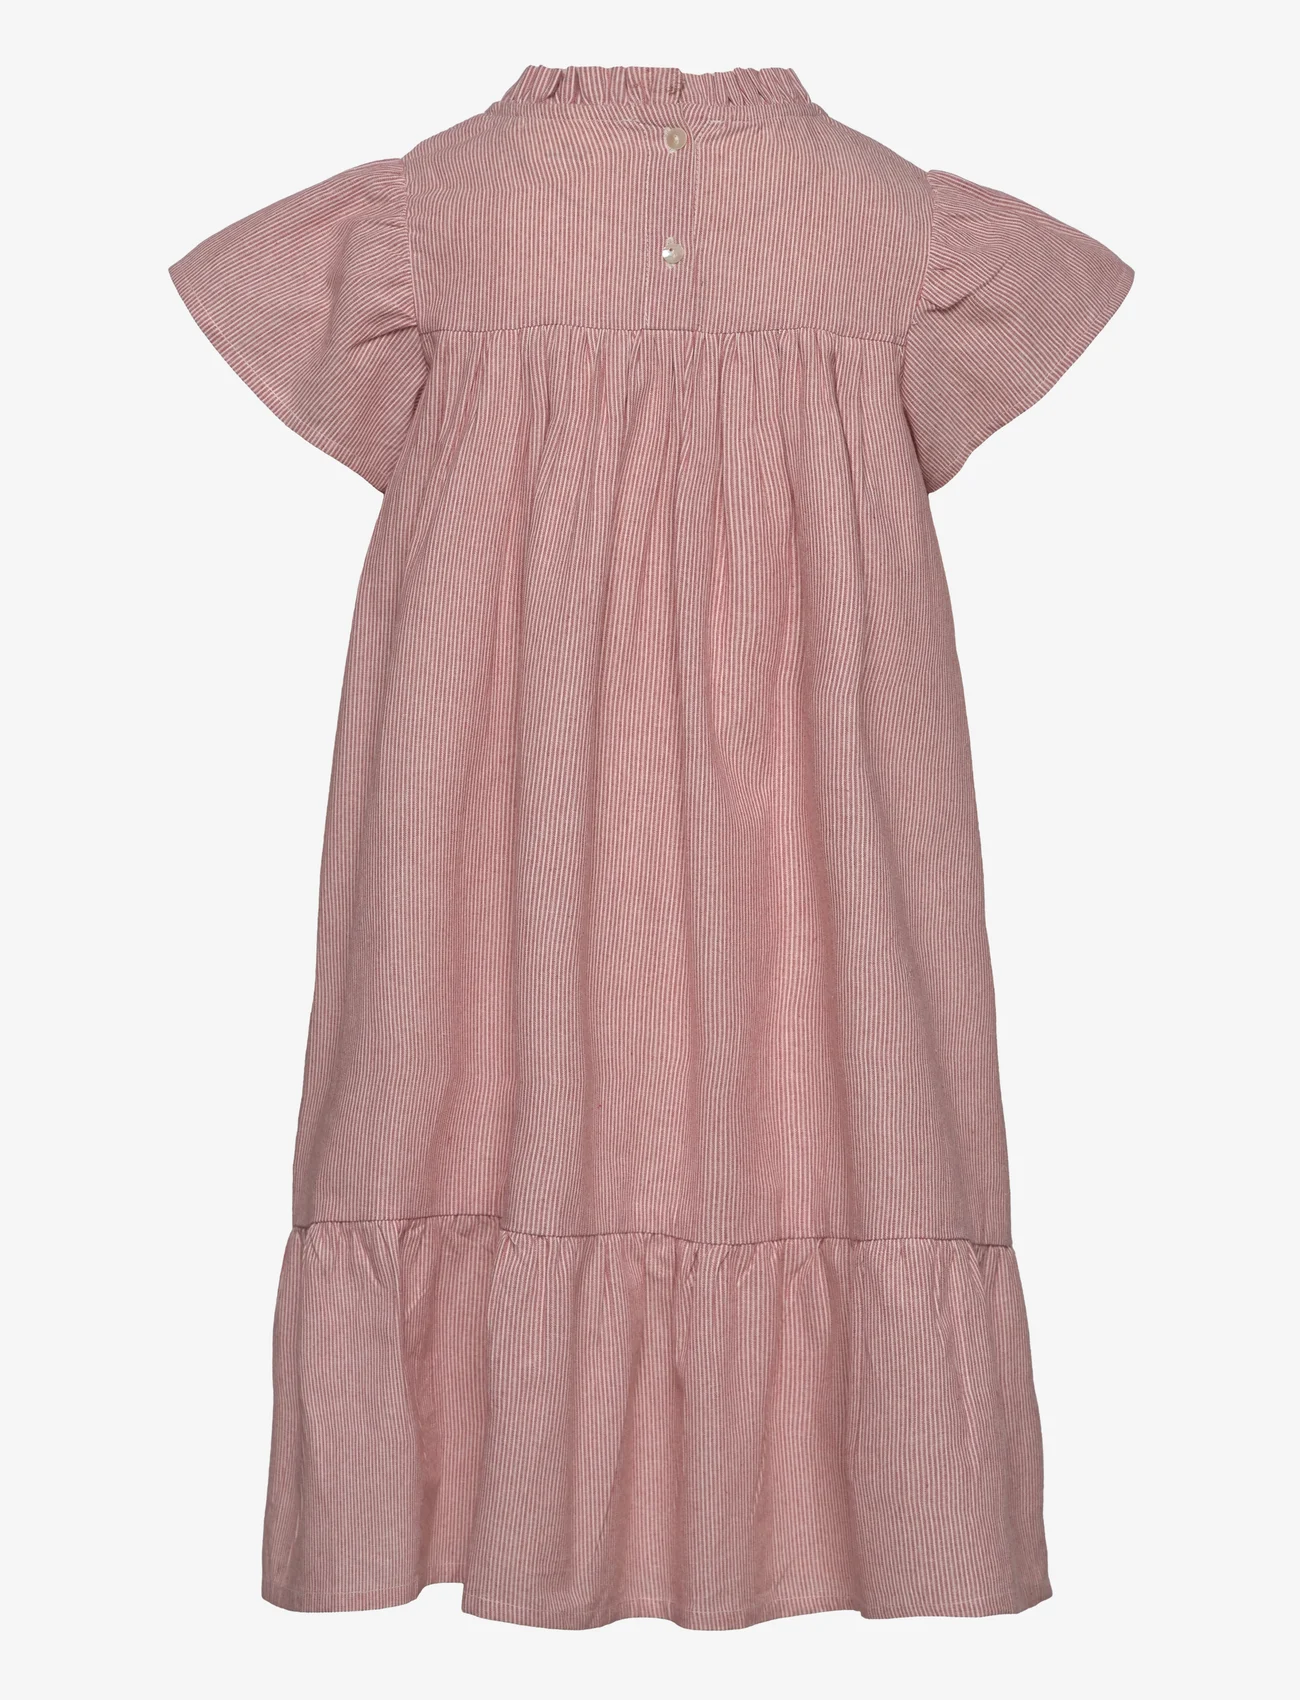 En Fant - Dress YD Stripe - short-sleeved casual dresses - old rose - 1